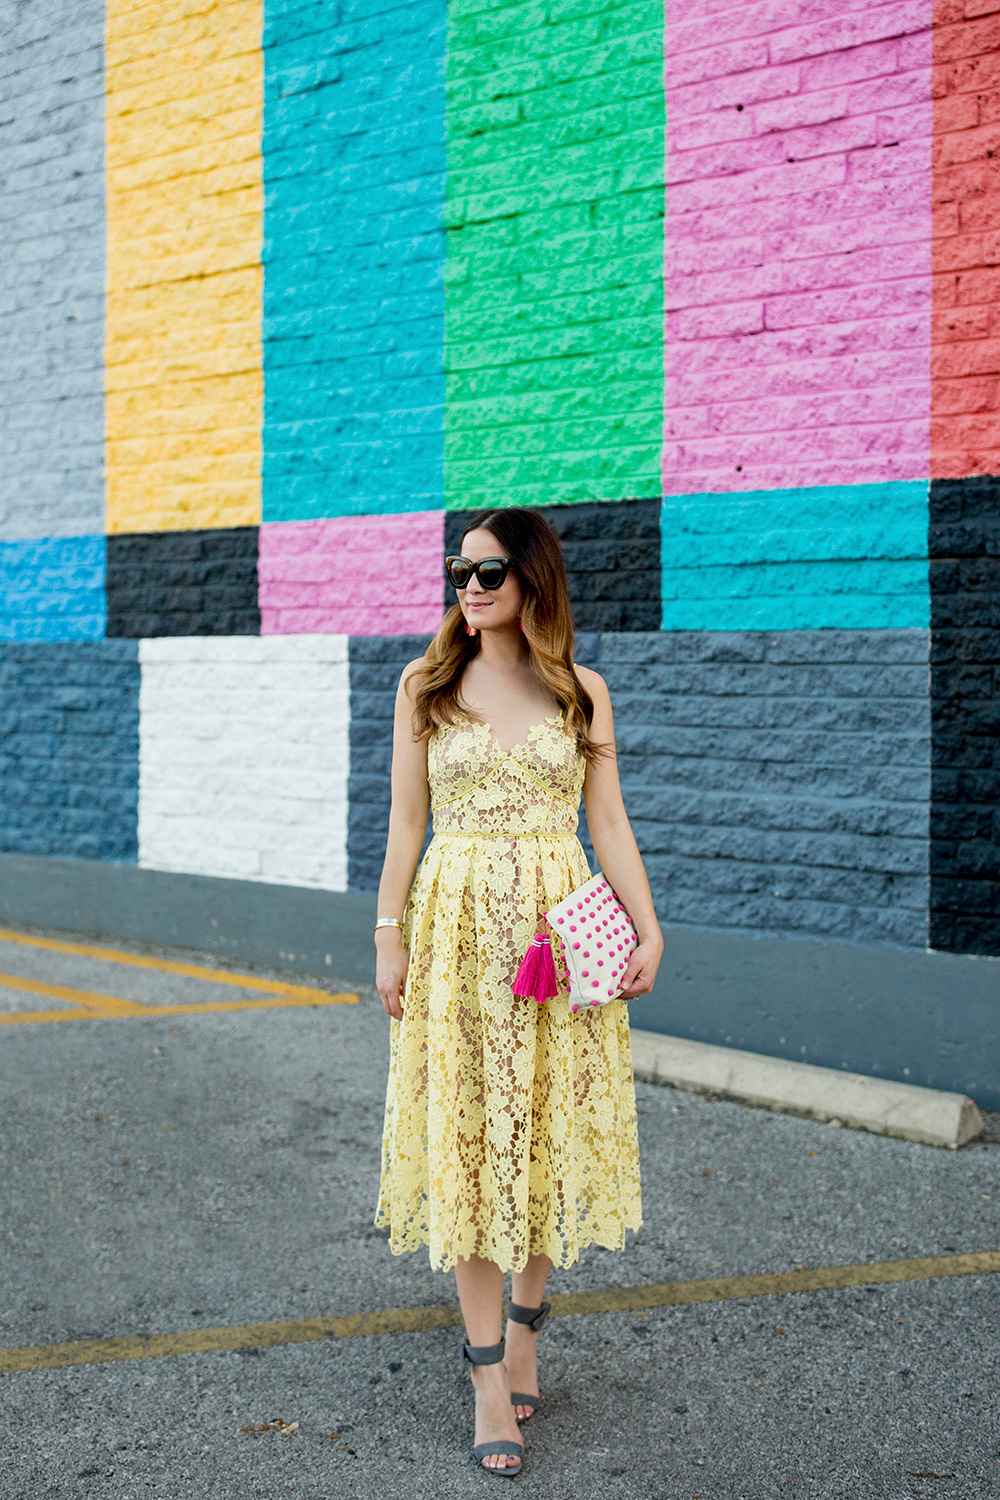 Yellow Lace Midi Dress